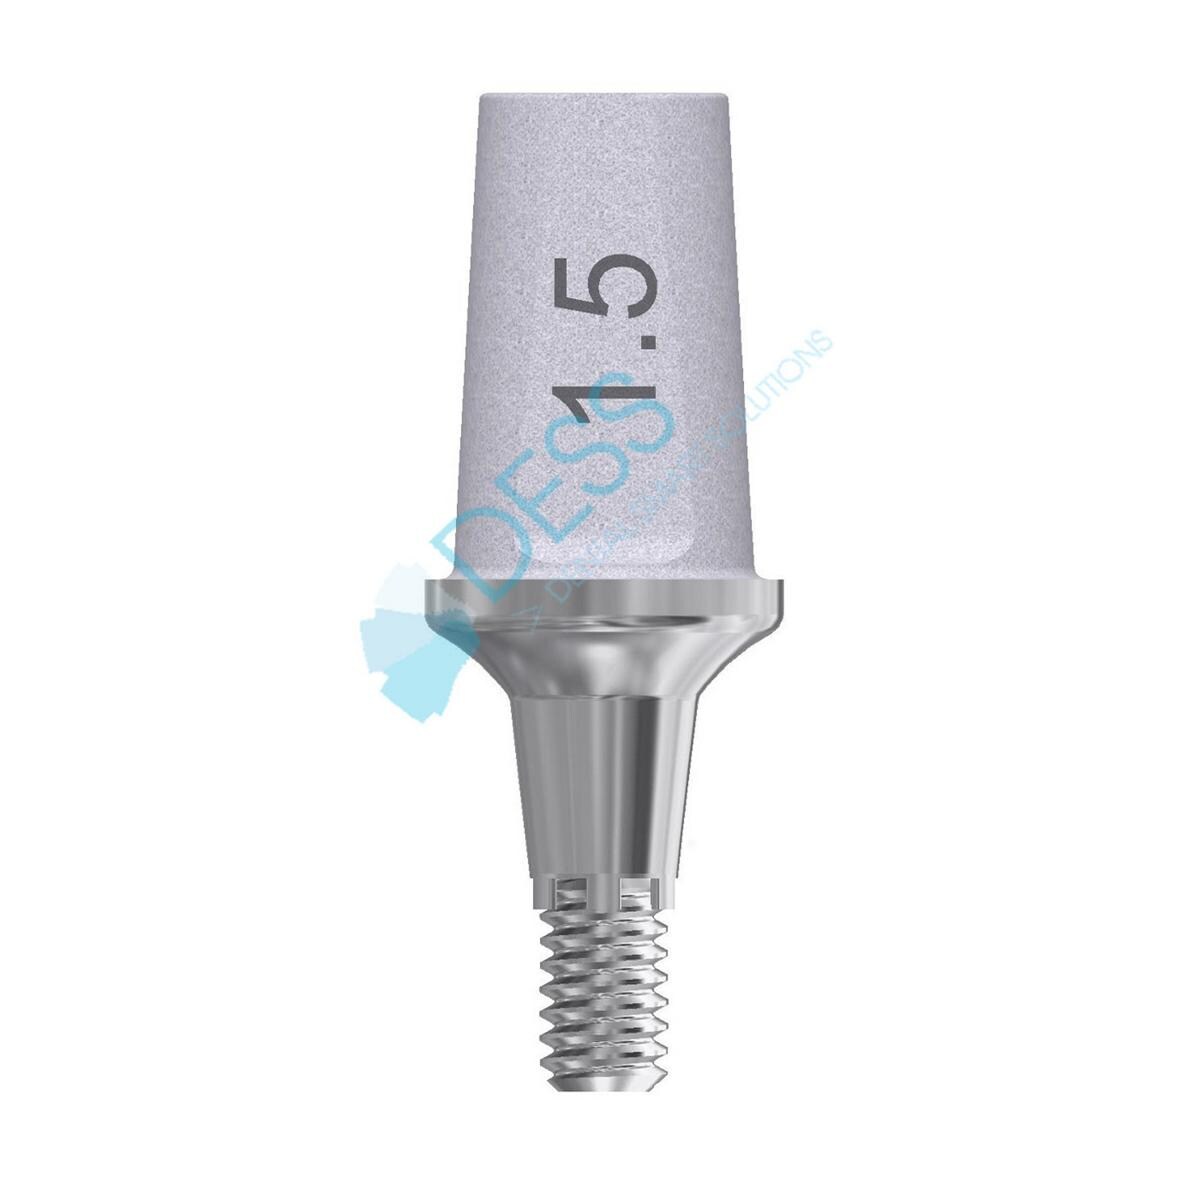 Titanabutment - kompatibel mit Dentsply Ankylos® - Höhe 1,5 mm, 0° gewinkelt, mit Rotationsschutz